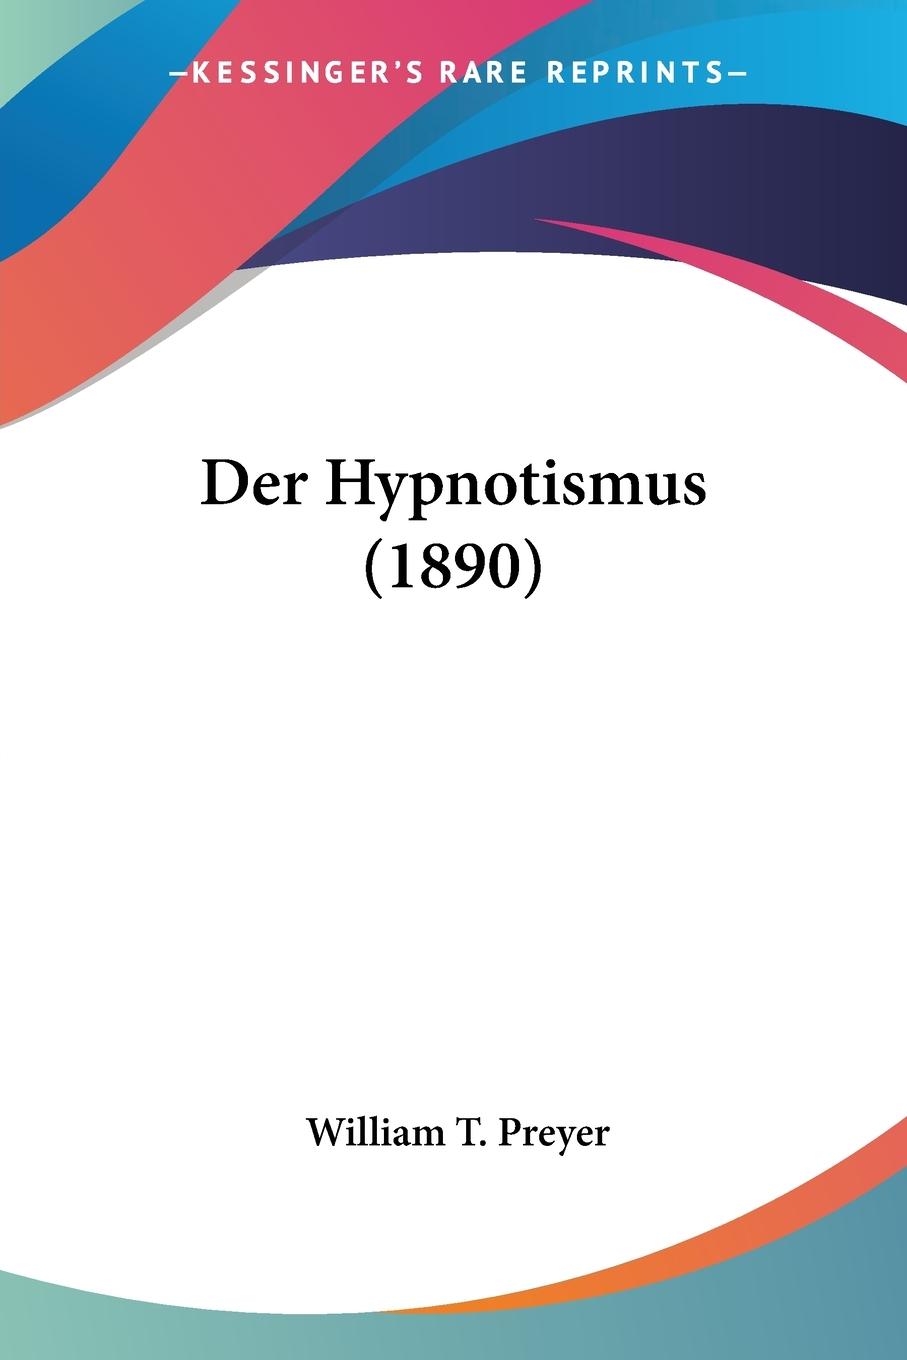 Der Hypnotismus (1890) - Preyer, William T.